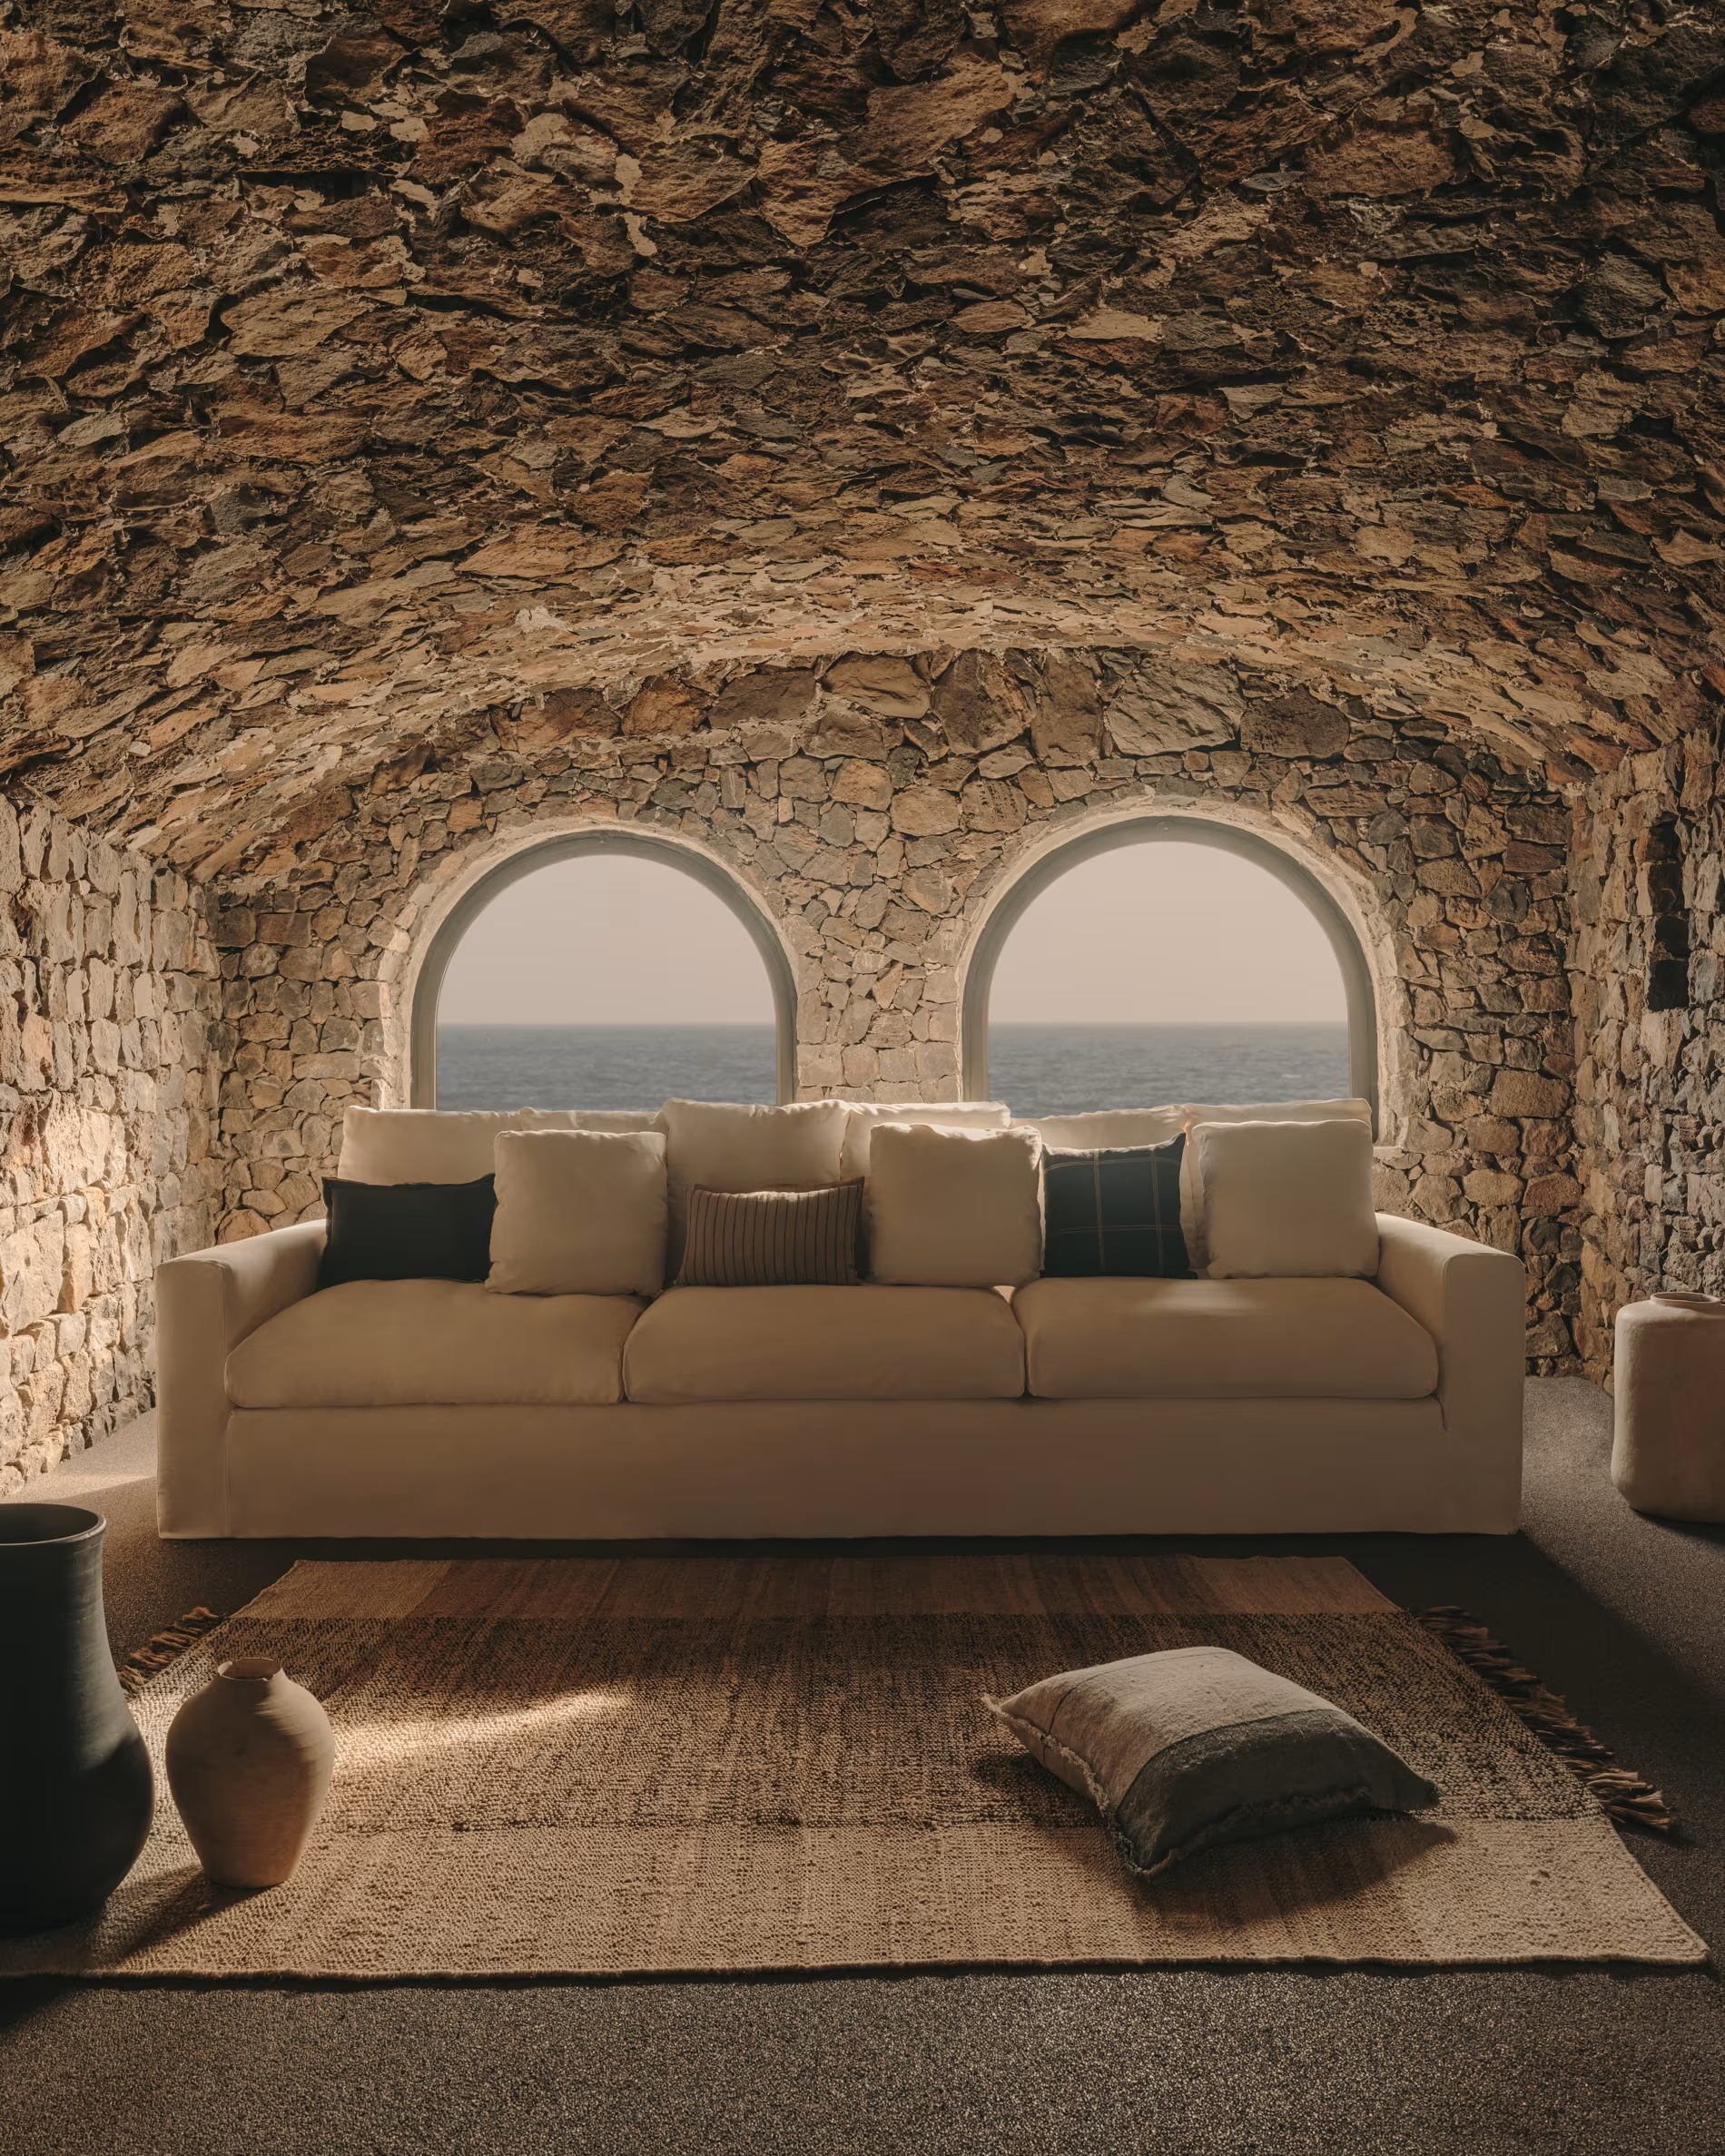 Sofá en salón hecho de piedras rústicas con vistas al mar